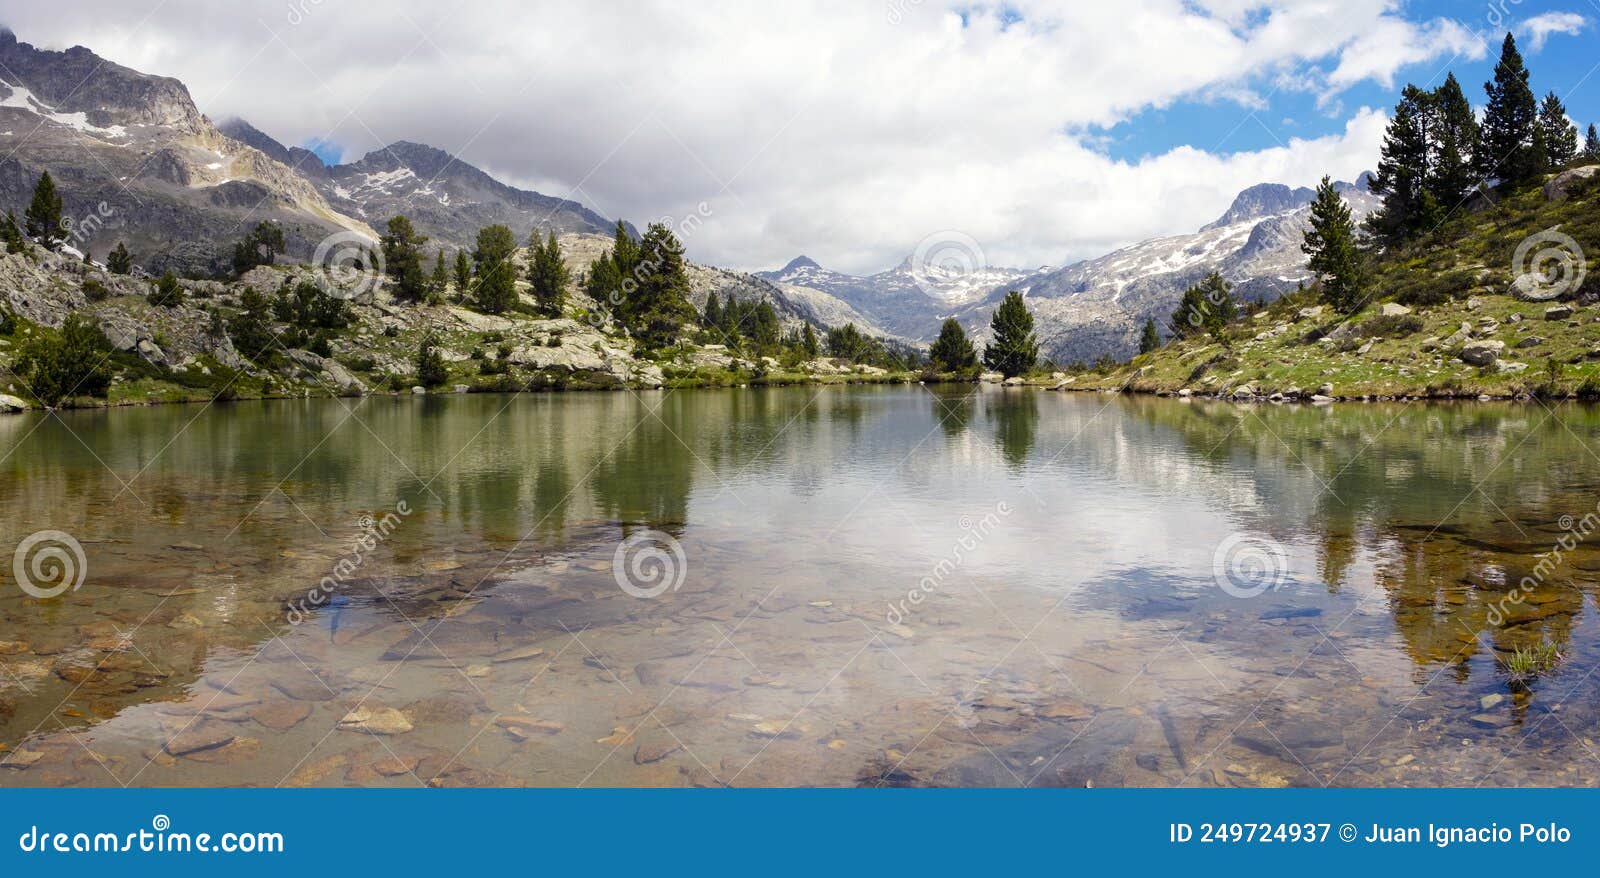 ordicuso lakes in banos de panticosa, pyrenees of huesca